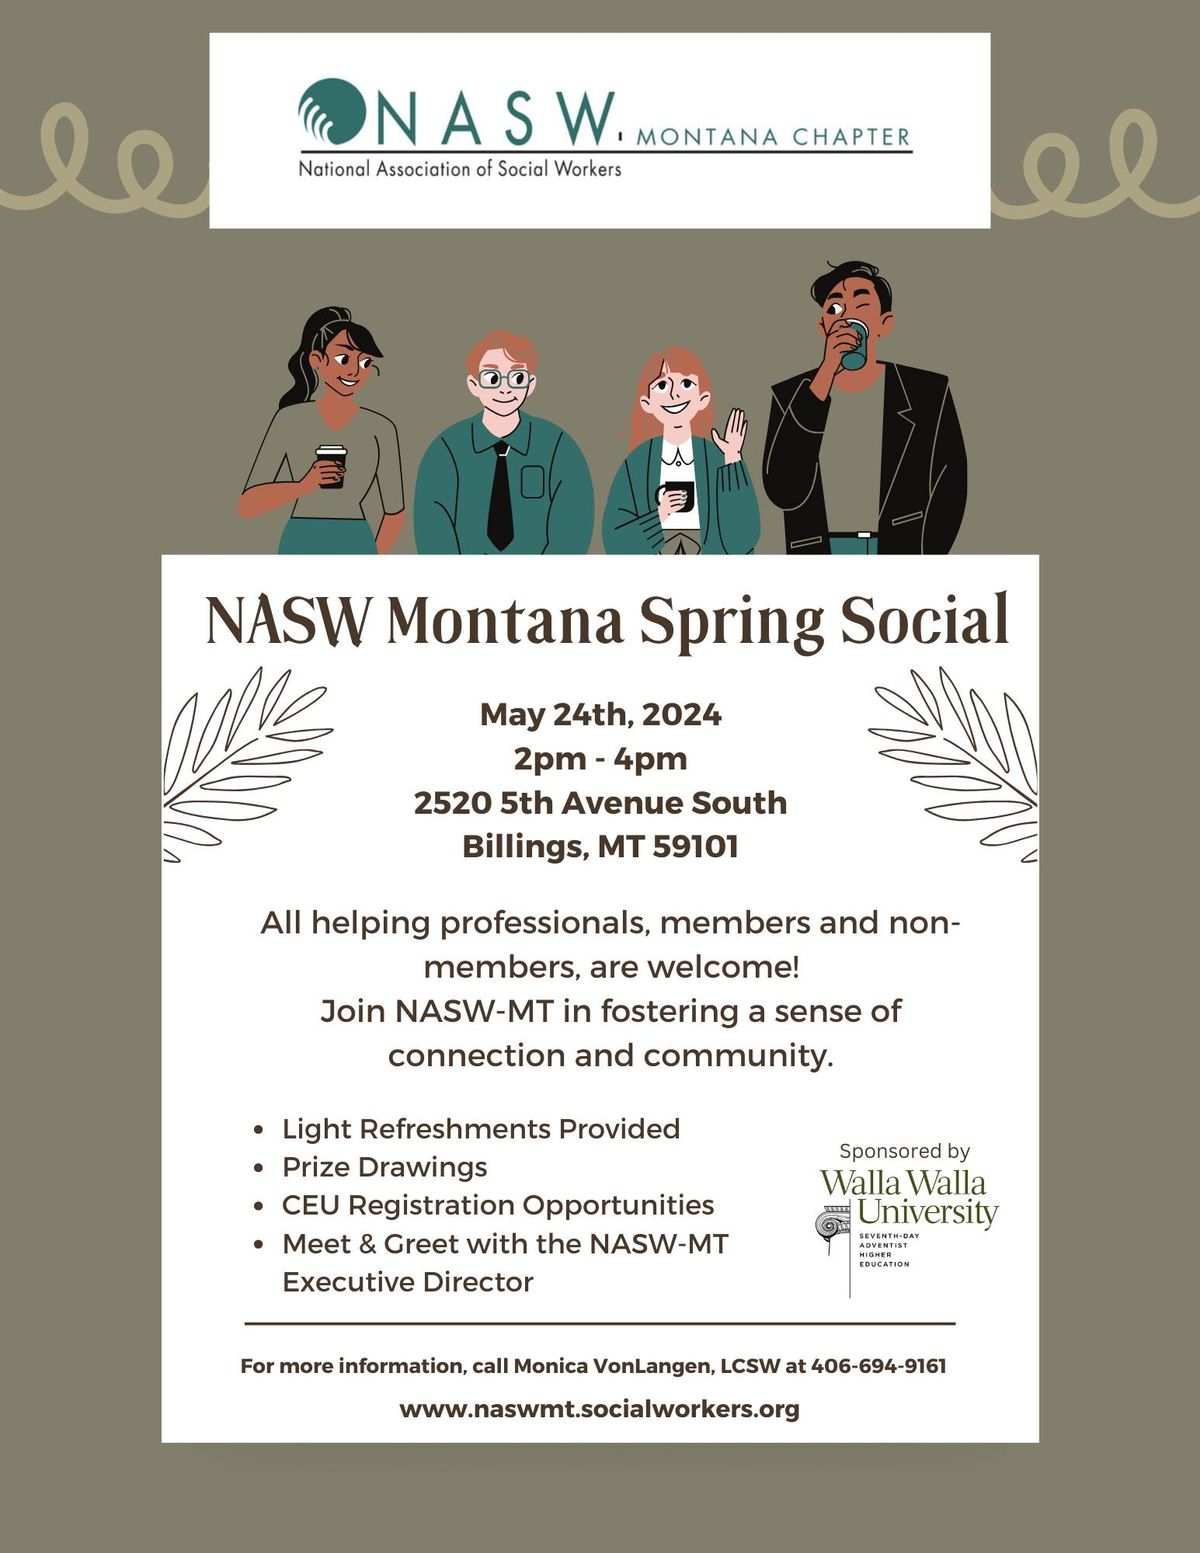 NASW Montana Spring Social